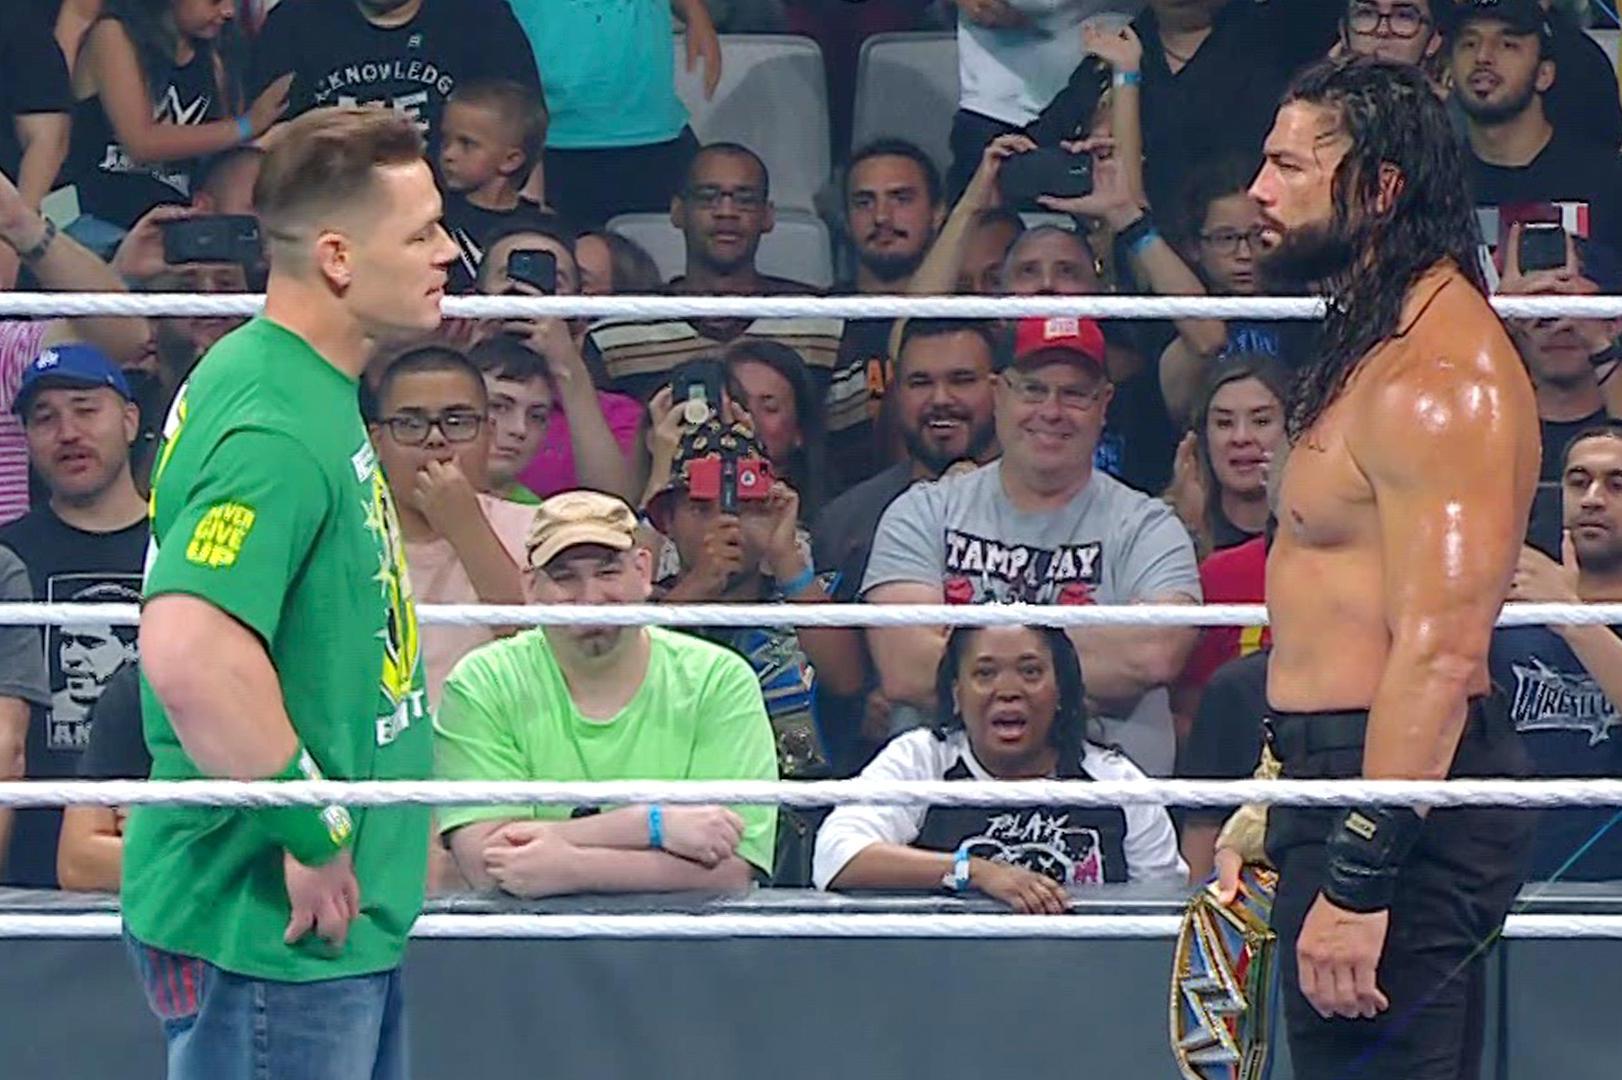 Cena and fans john John Cena